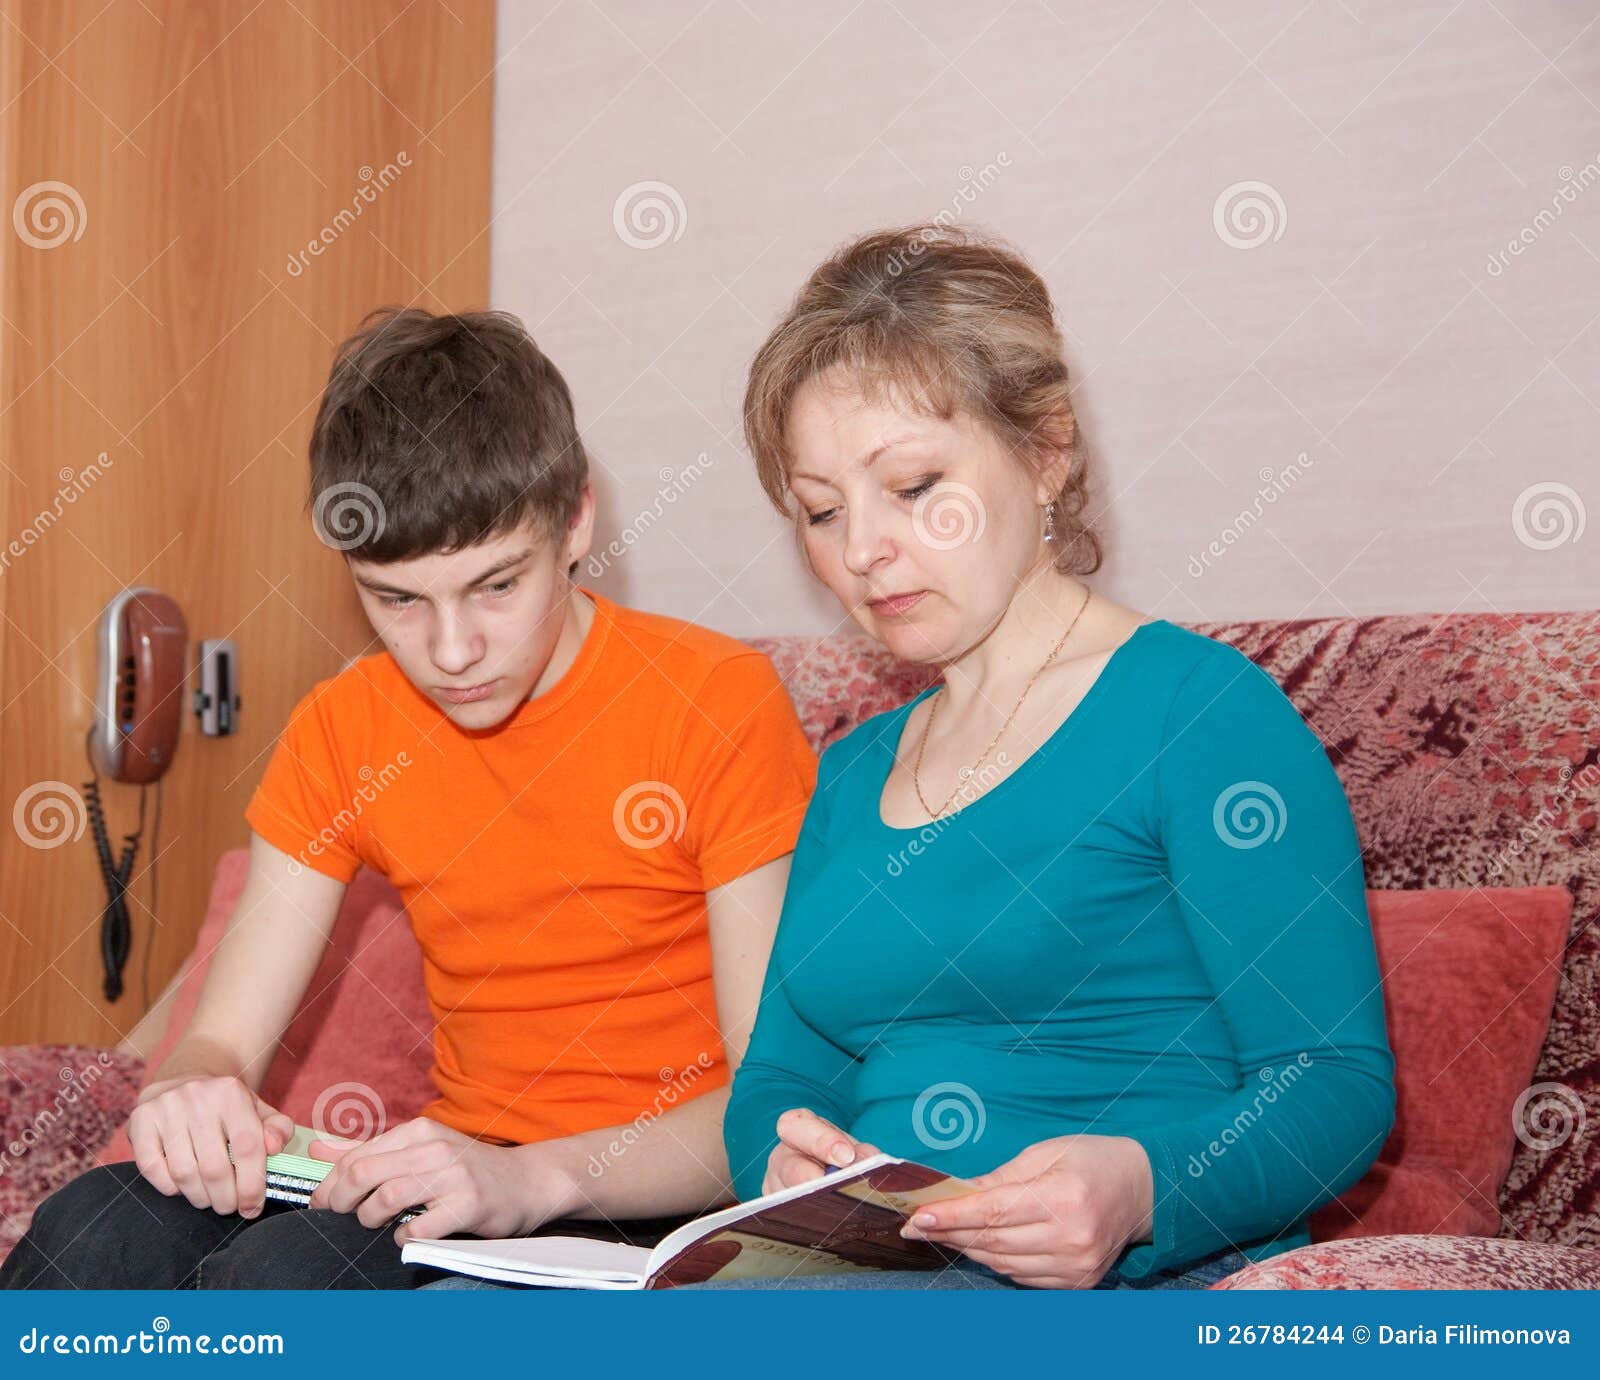 Русская мама учит сына заниматься. Мать проводит сына. Мать и сын учатся. Мама показывает сыну картинку. Мама помогает сыну с уроками.